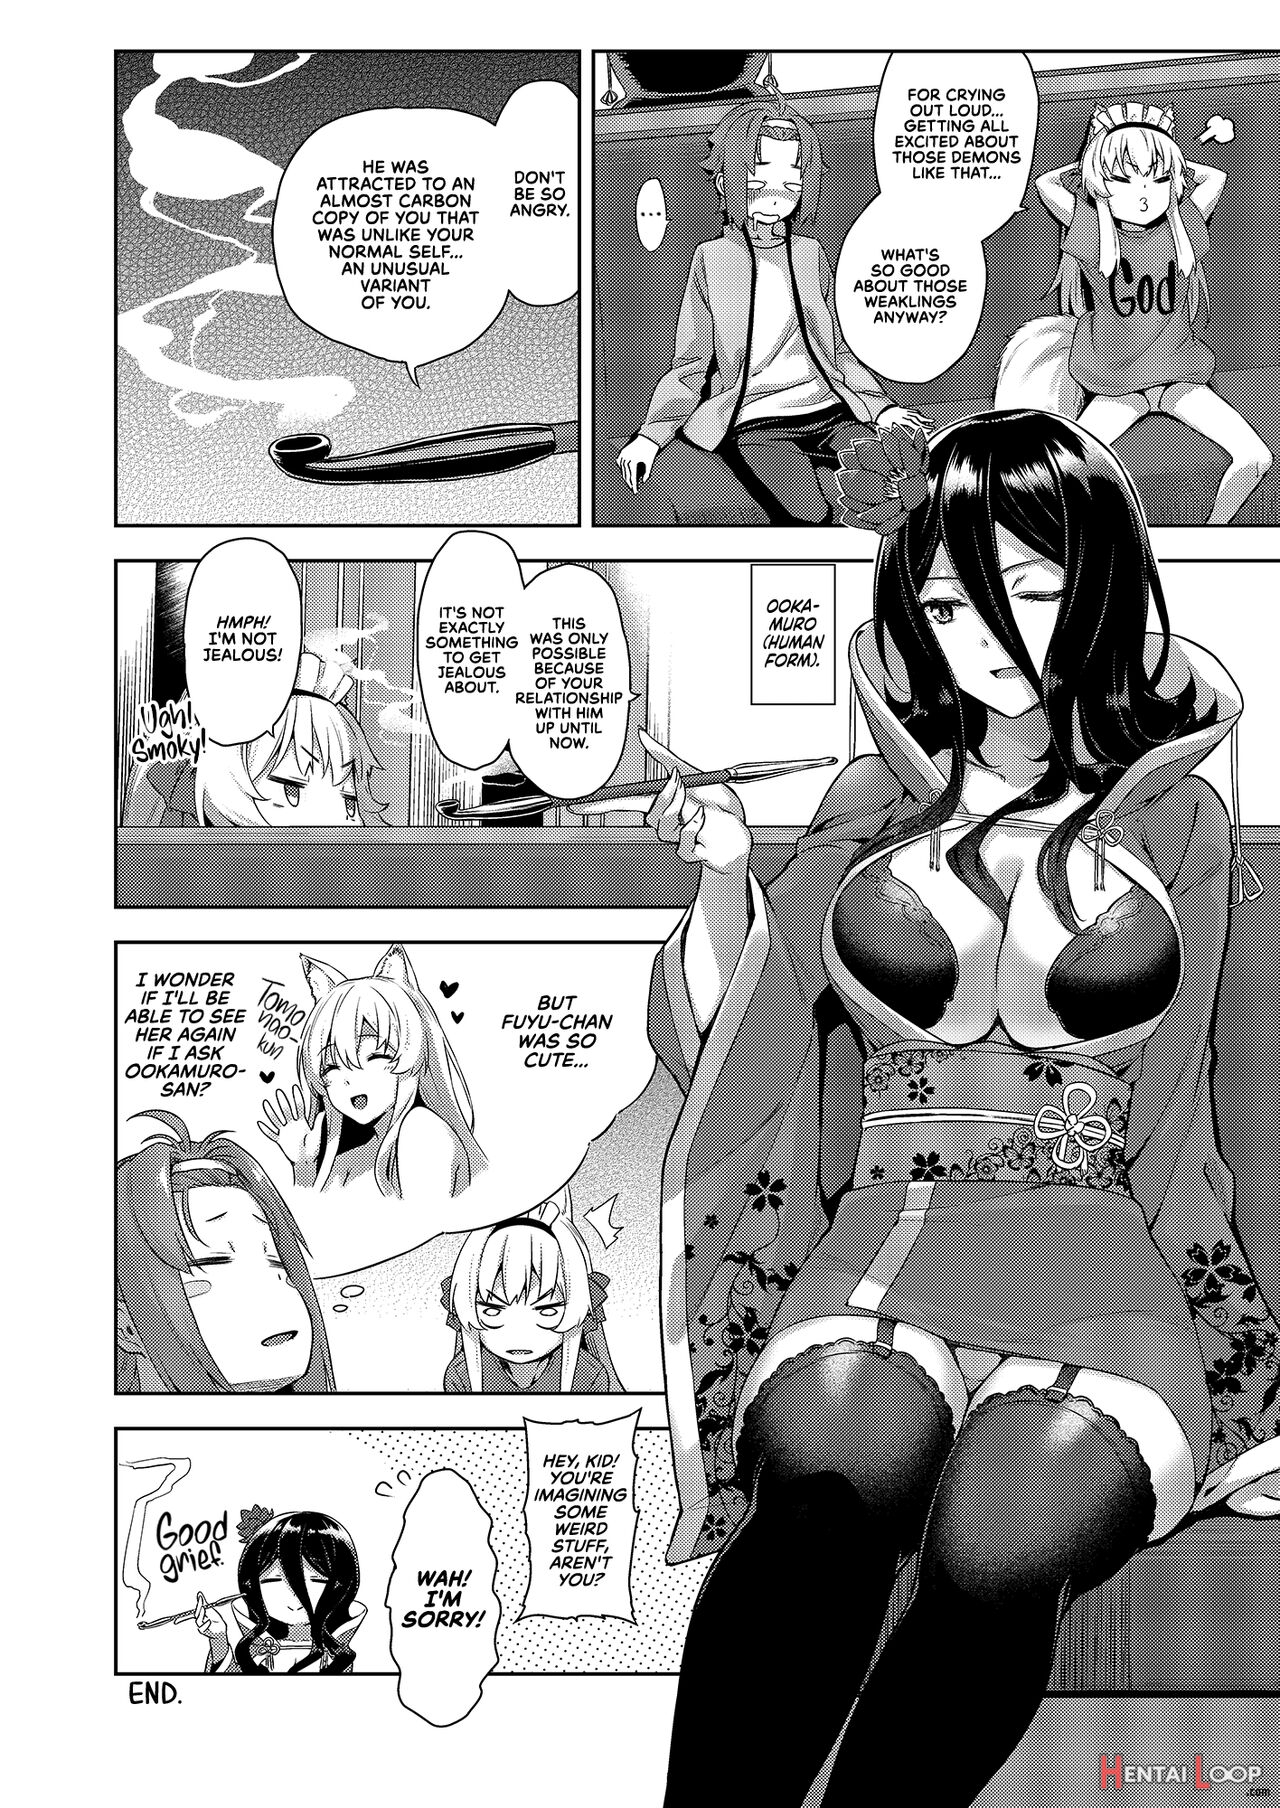 The Onee-san At Mayoiga Part 8 page 29